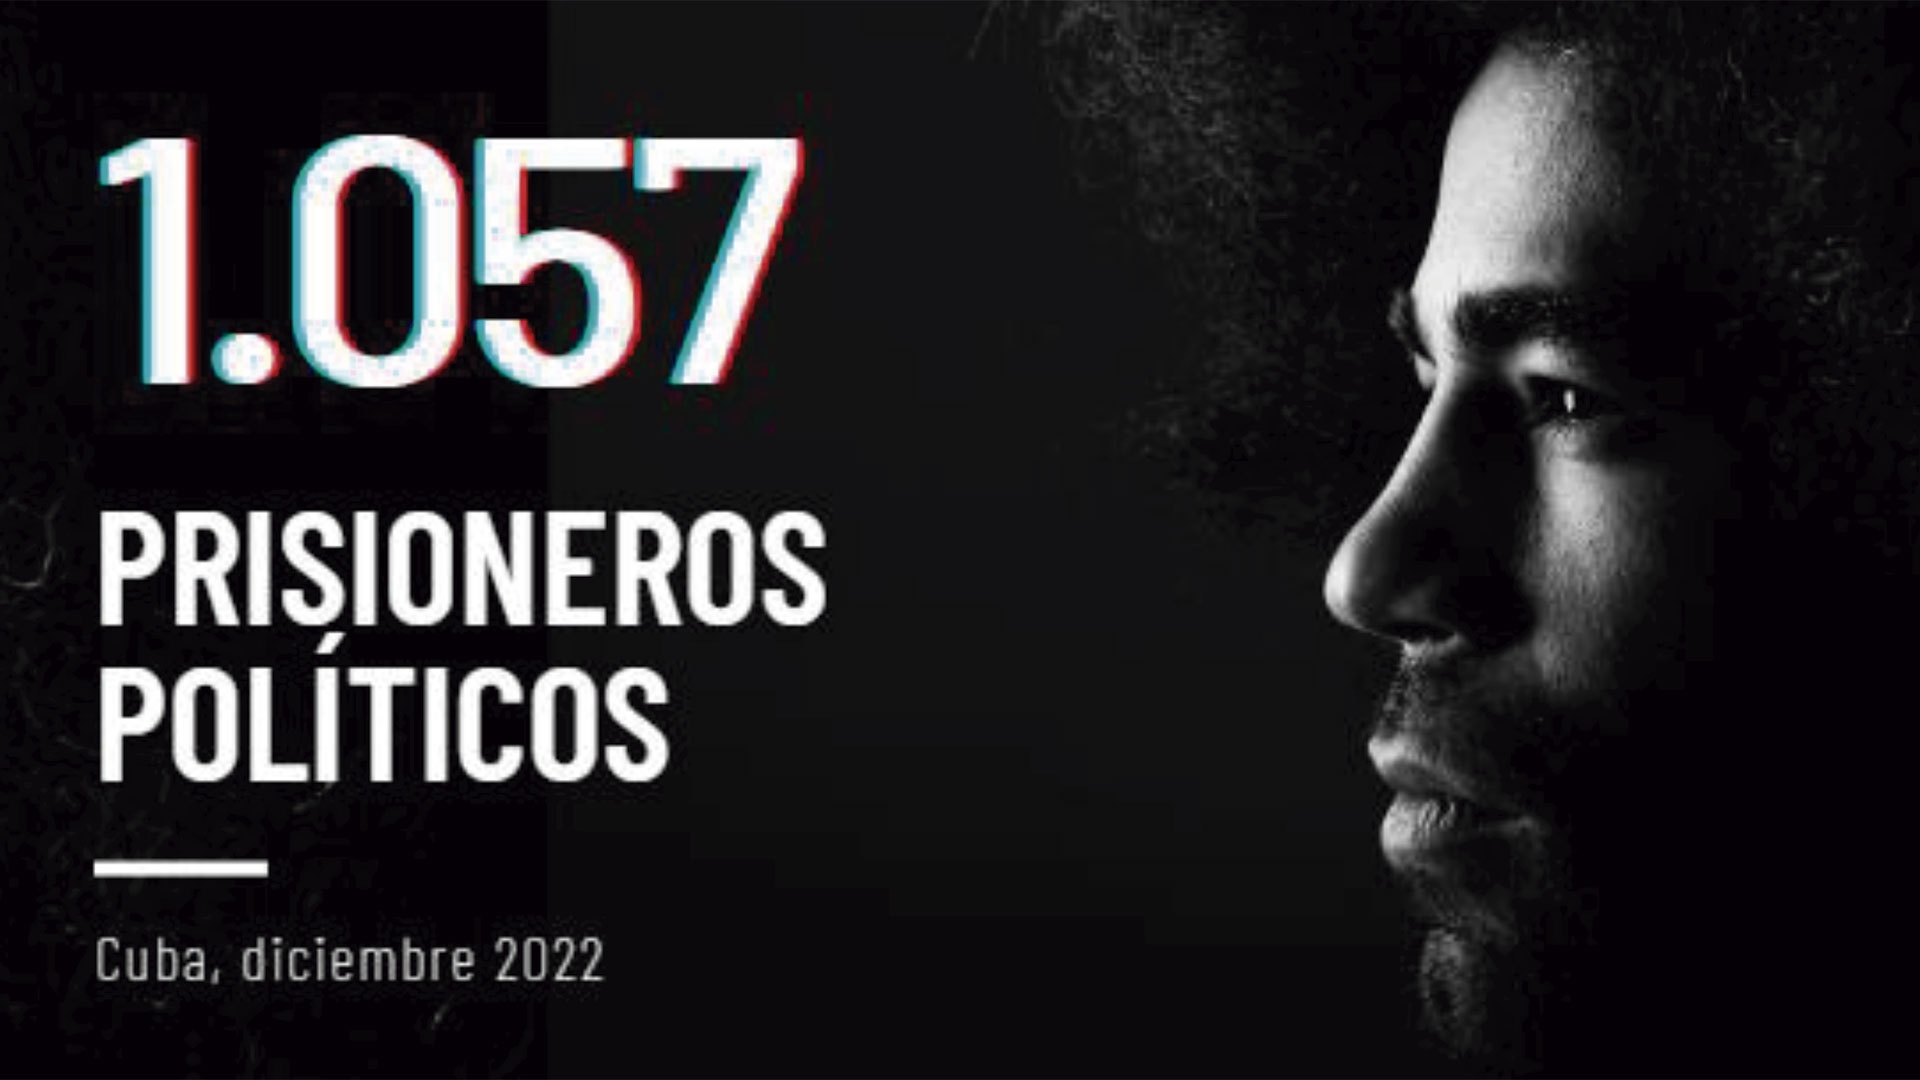 Prisoners Defenders denunció que hay 1.057 presos políticos en Cuba (Prisoners Defenders)